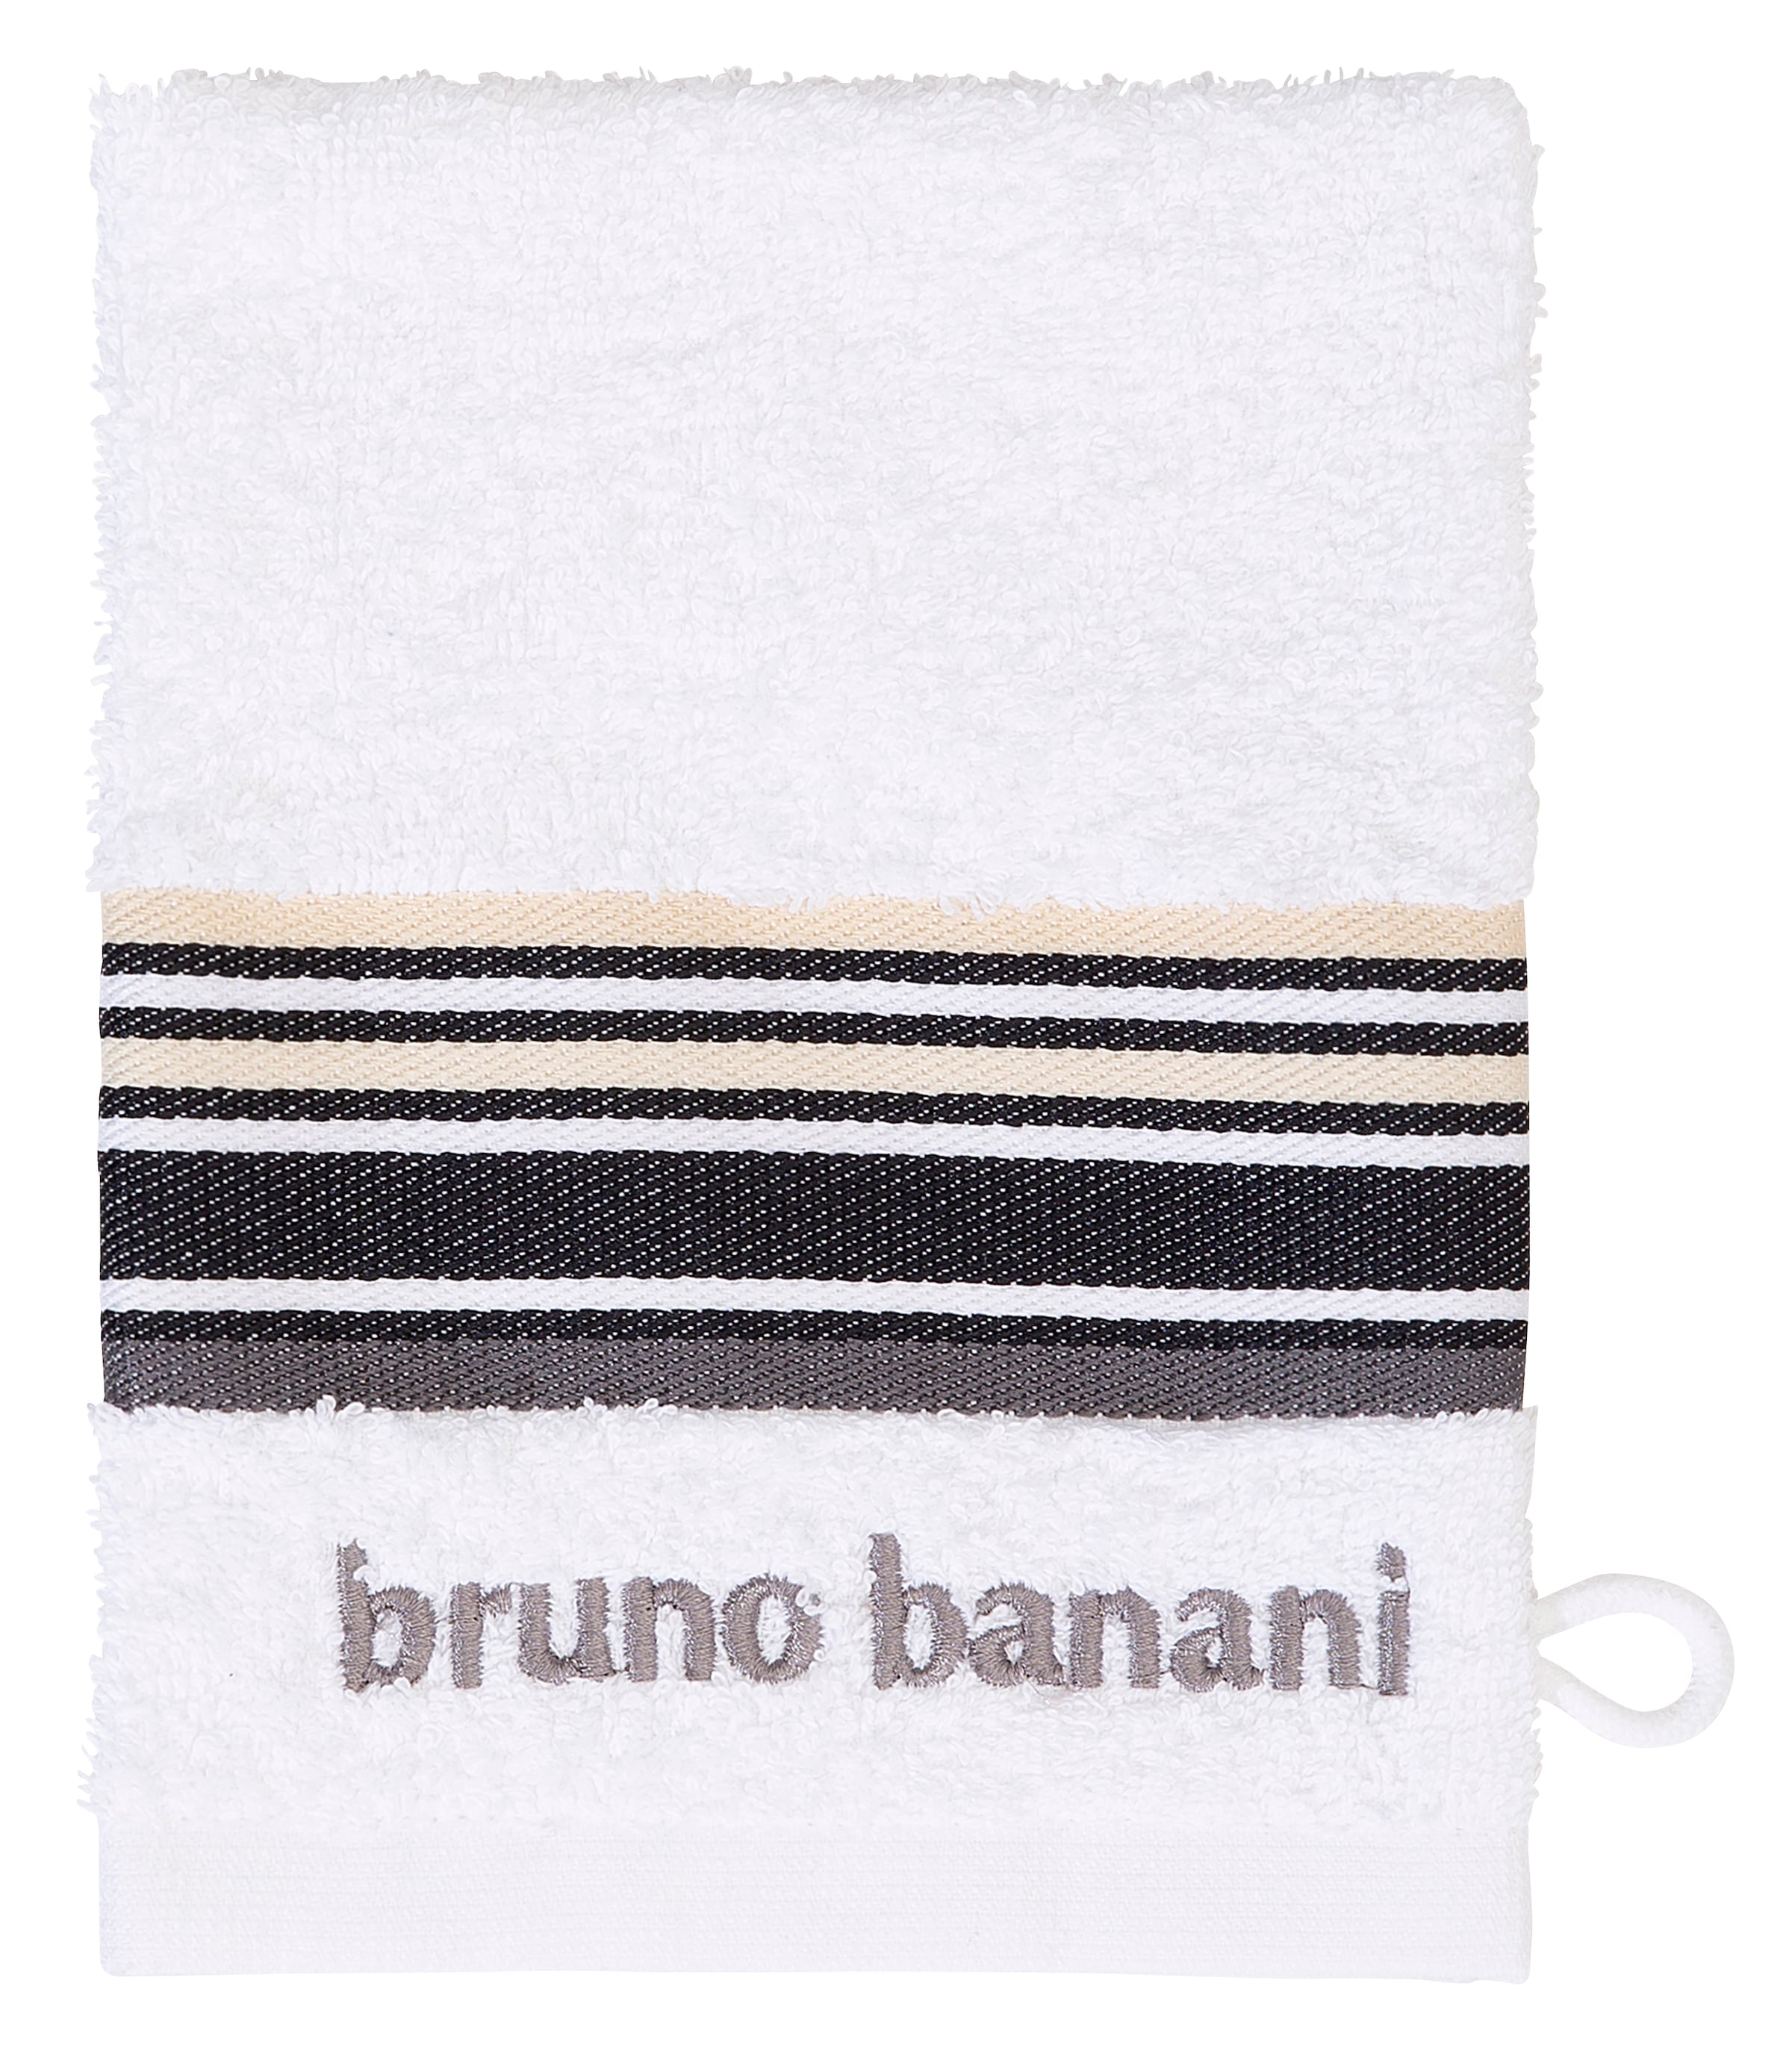 Bruno Banani Handtuch Set »Maja«, Set, 7 tlg., Walkfrottee, mit Bordüre und  Markenlogo, 7 teiliges Handtücher Set, 100% Baumwolle auf Rechnung | BAUR